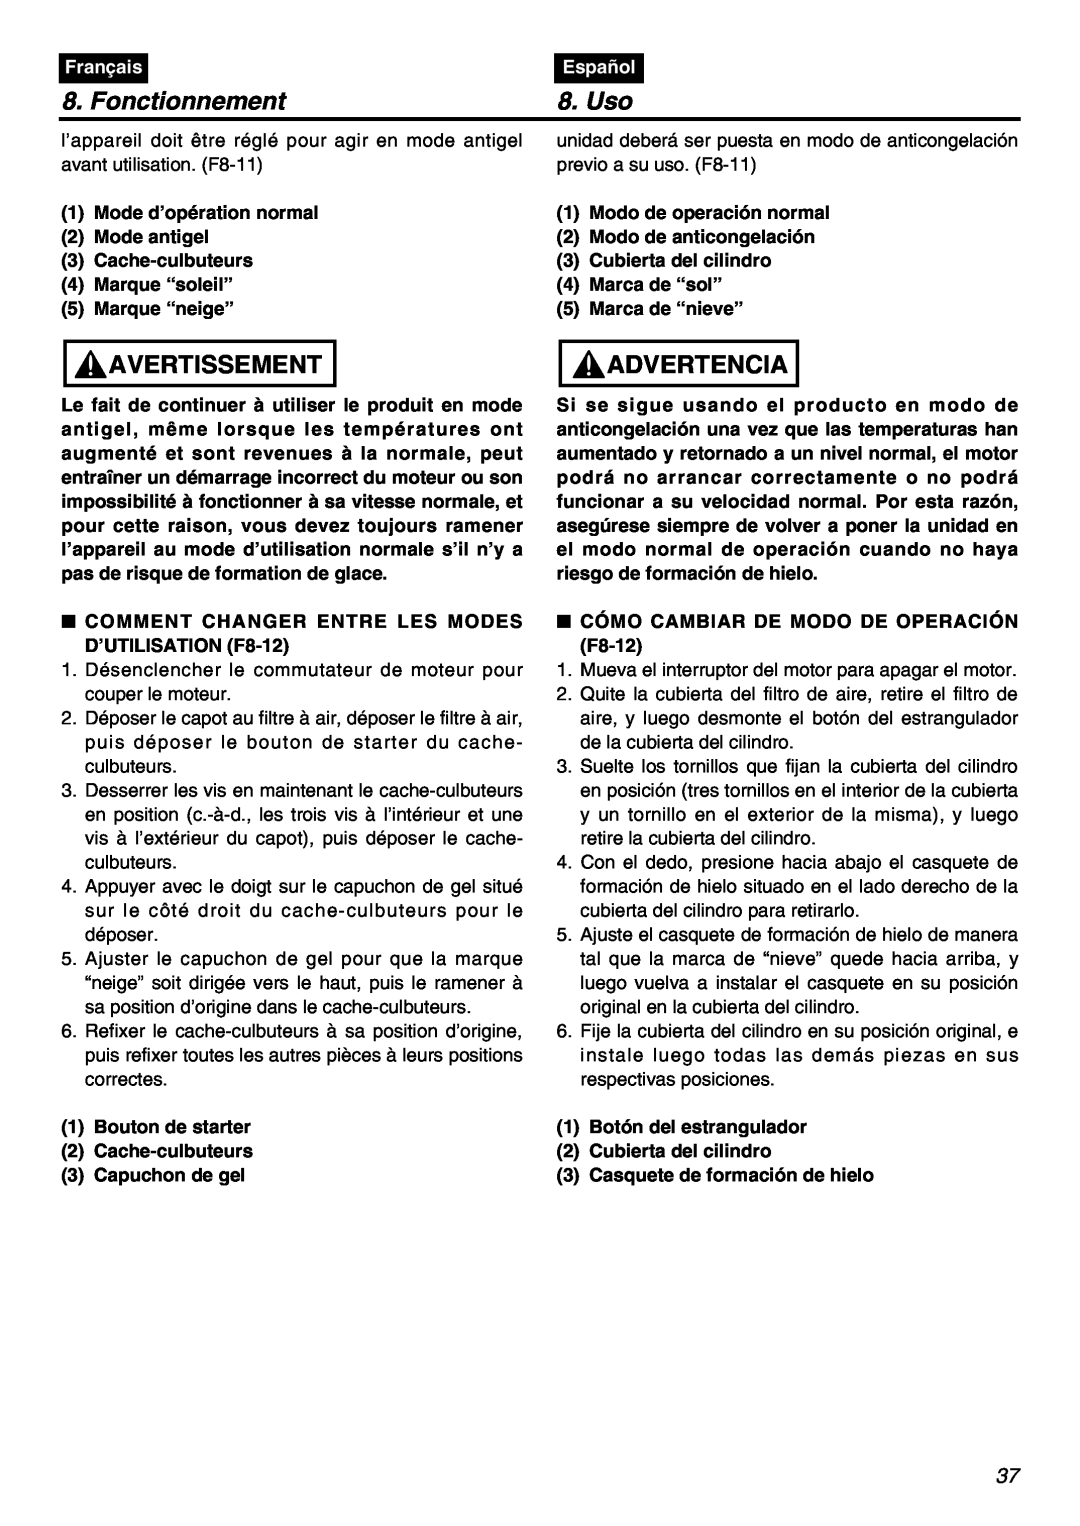 RedMax GZ400 manual Fonctionnement, Uso, Avertissement, Advertencia, Français, Español 